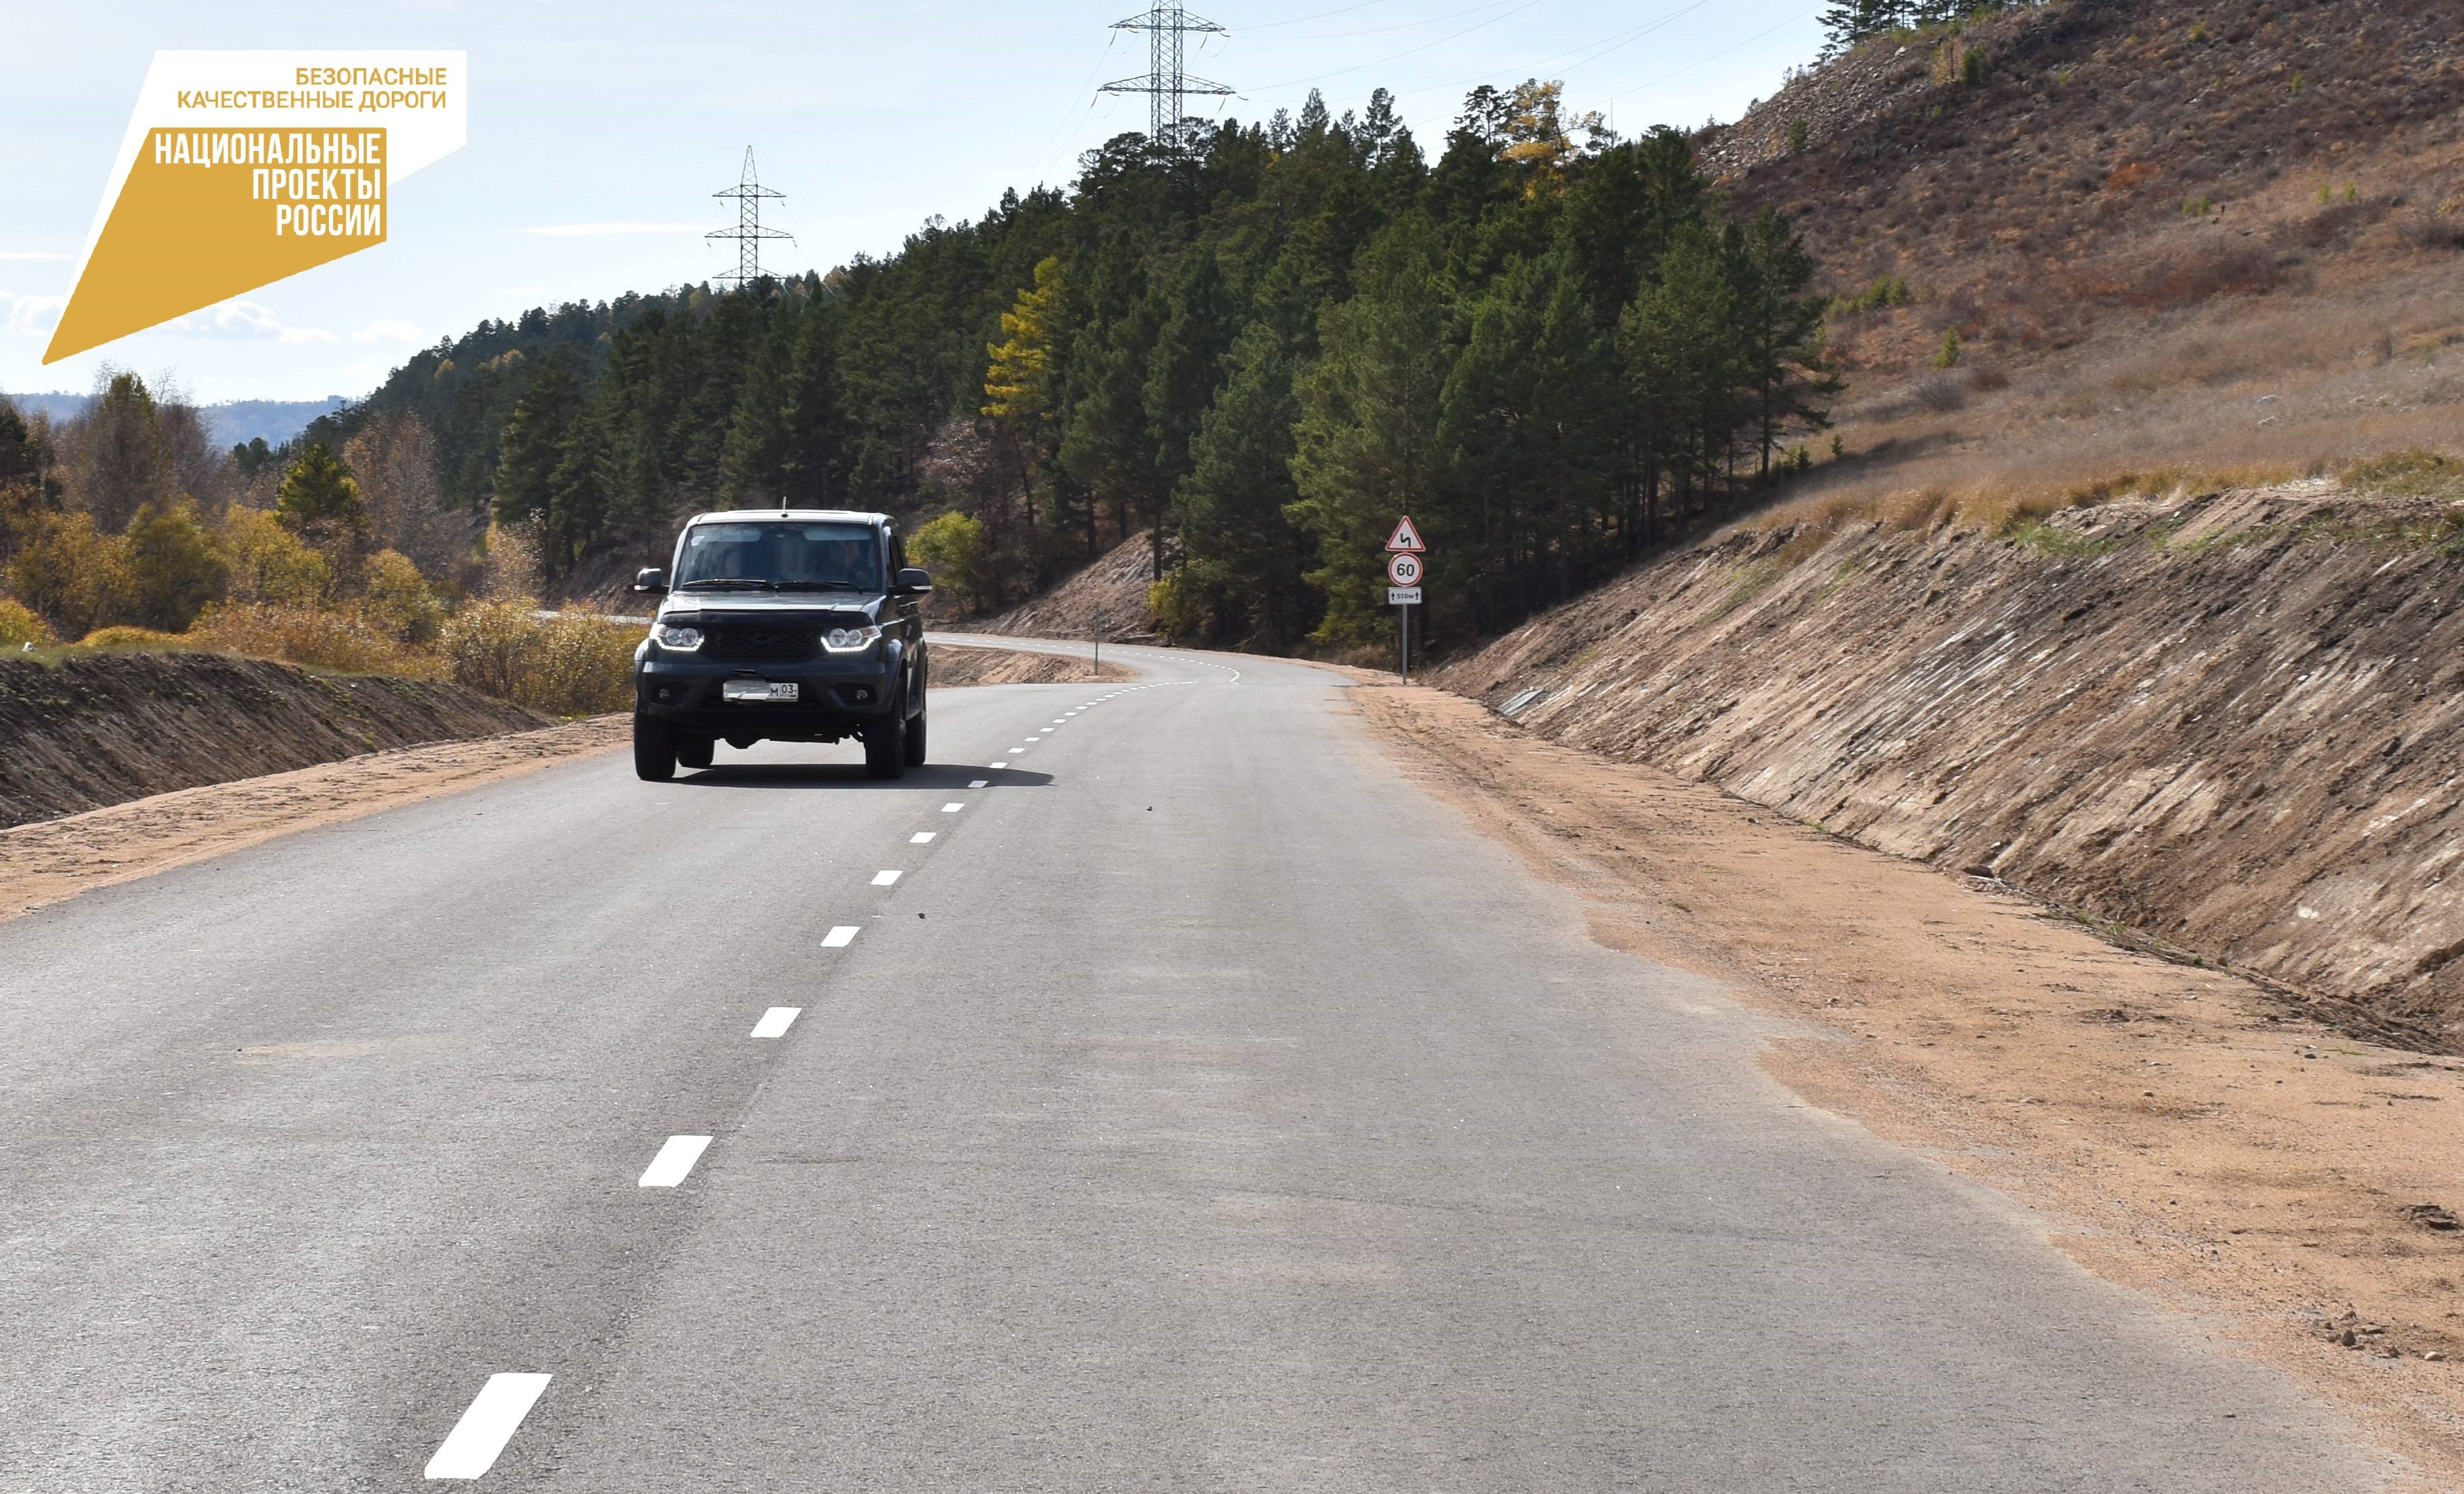 За 5 лет в Прибайкальском районе Бурятии отремонтировали 33 километра дорог